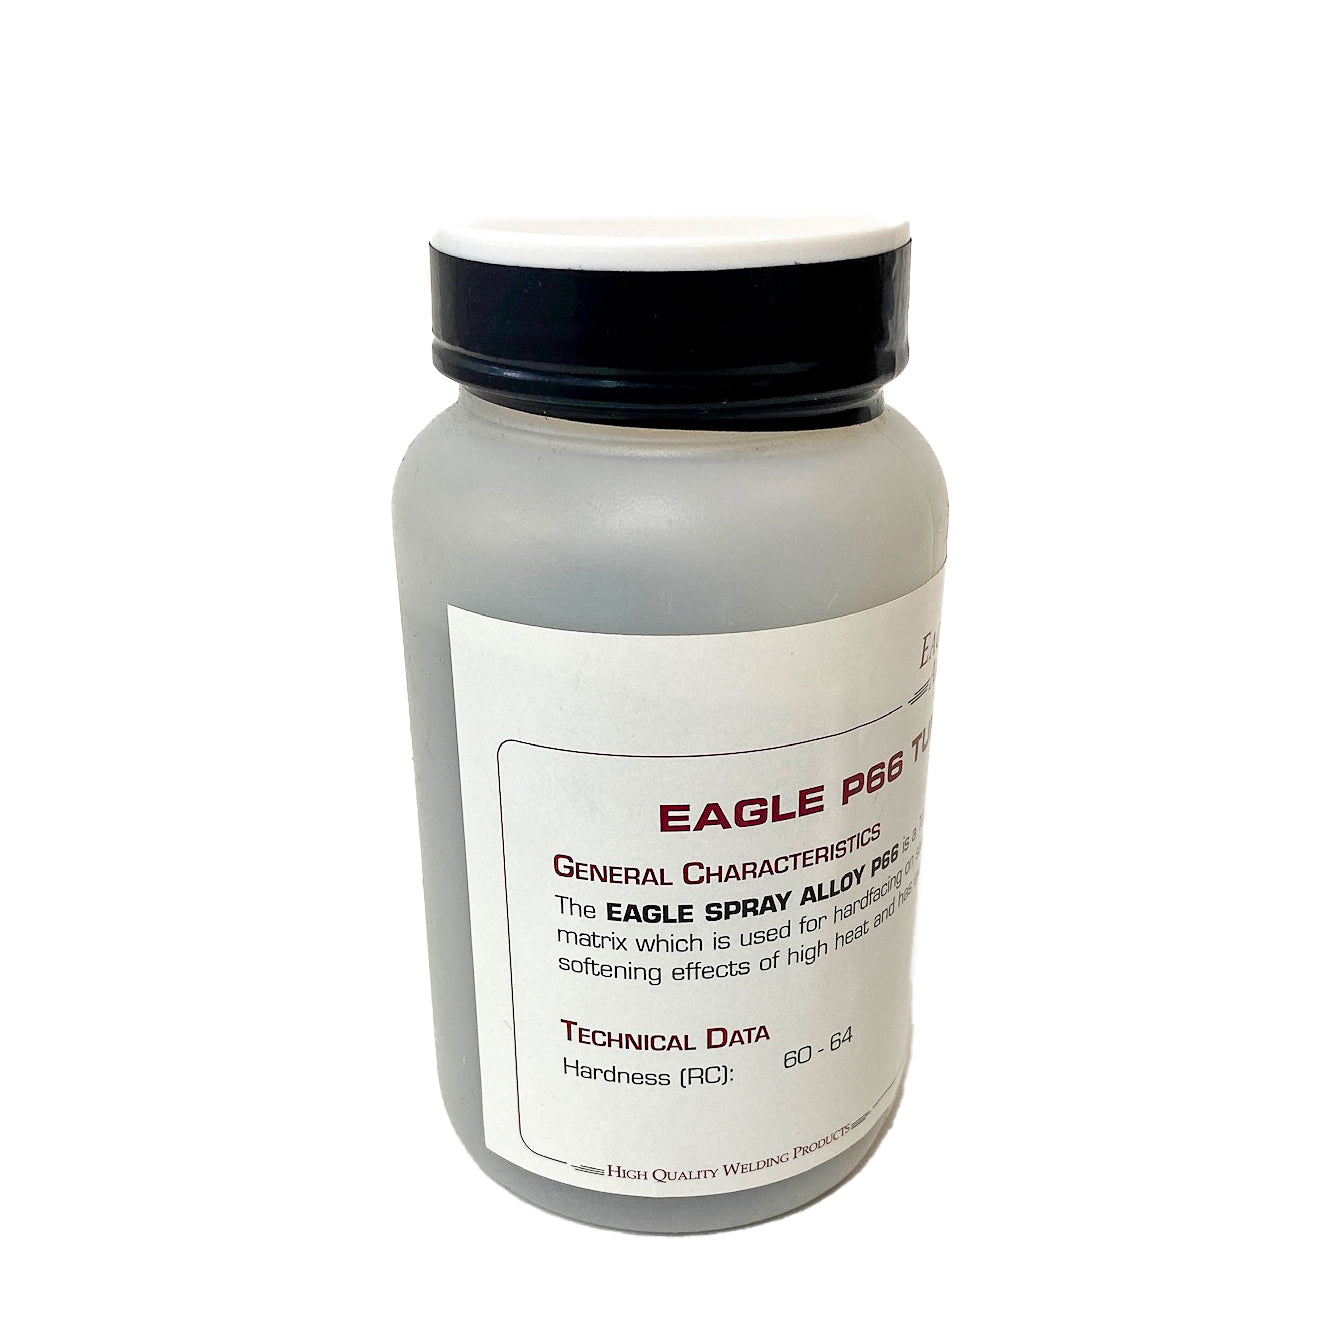 EAGLE P 66 SPRAY ALLOY POWDER | A High Quality Tungsten Carbide